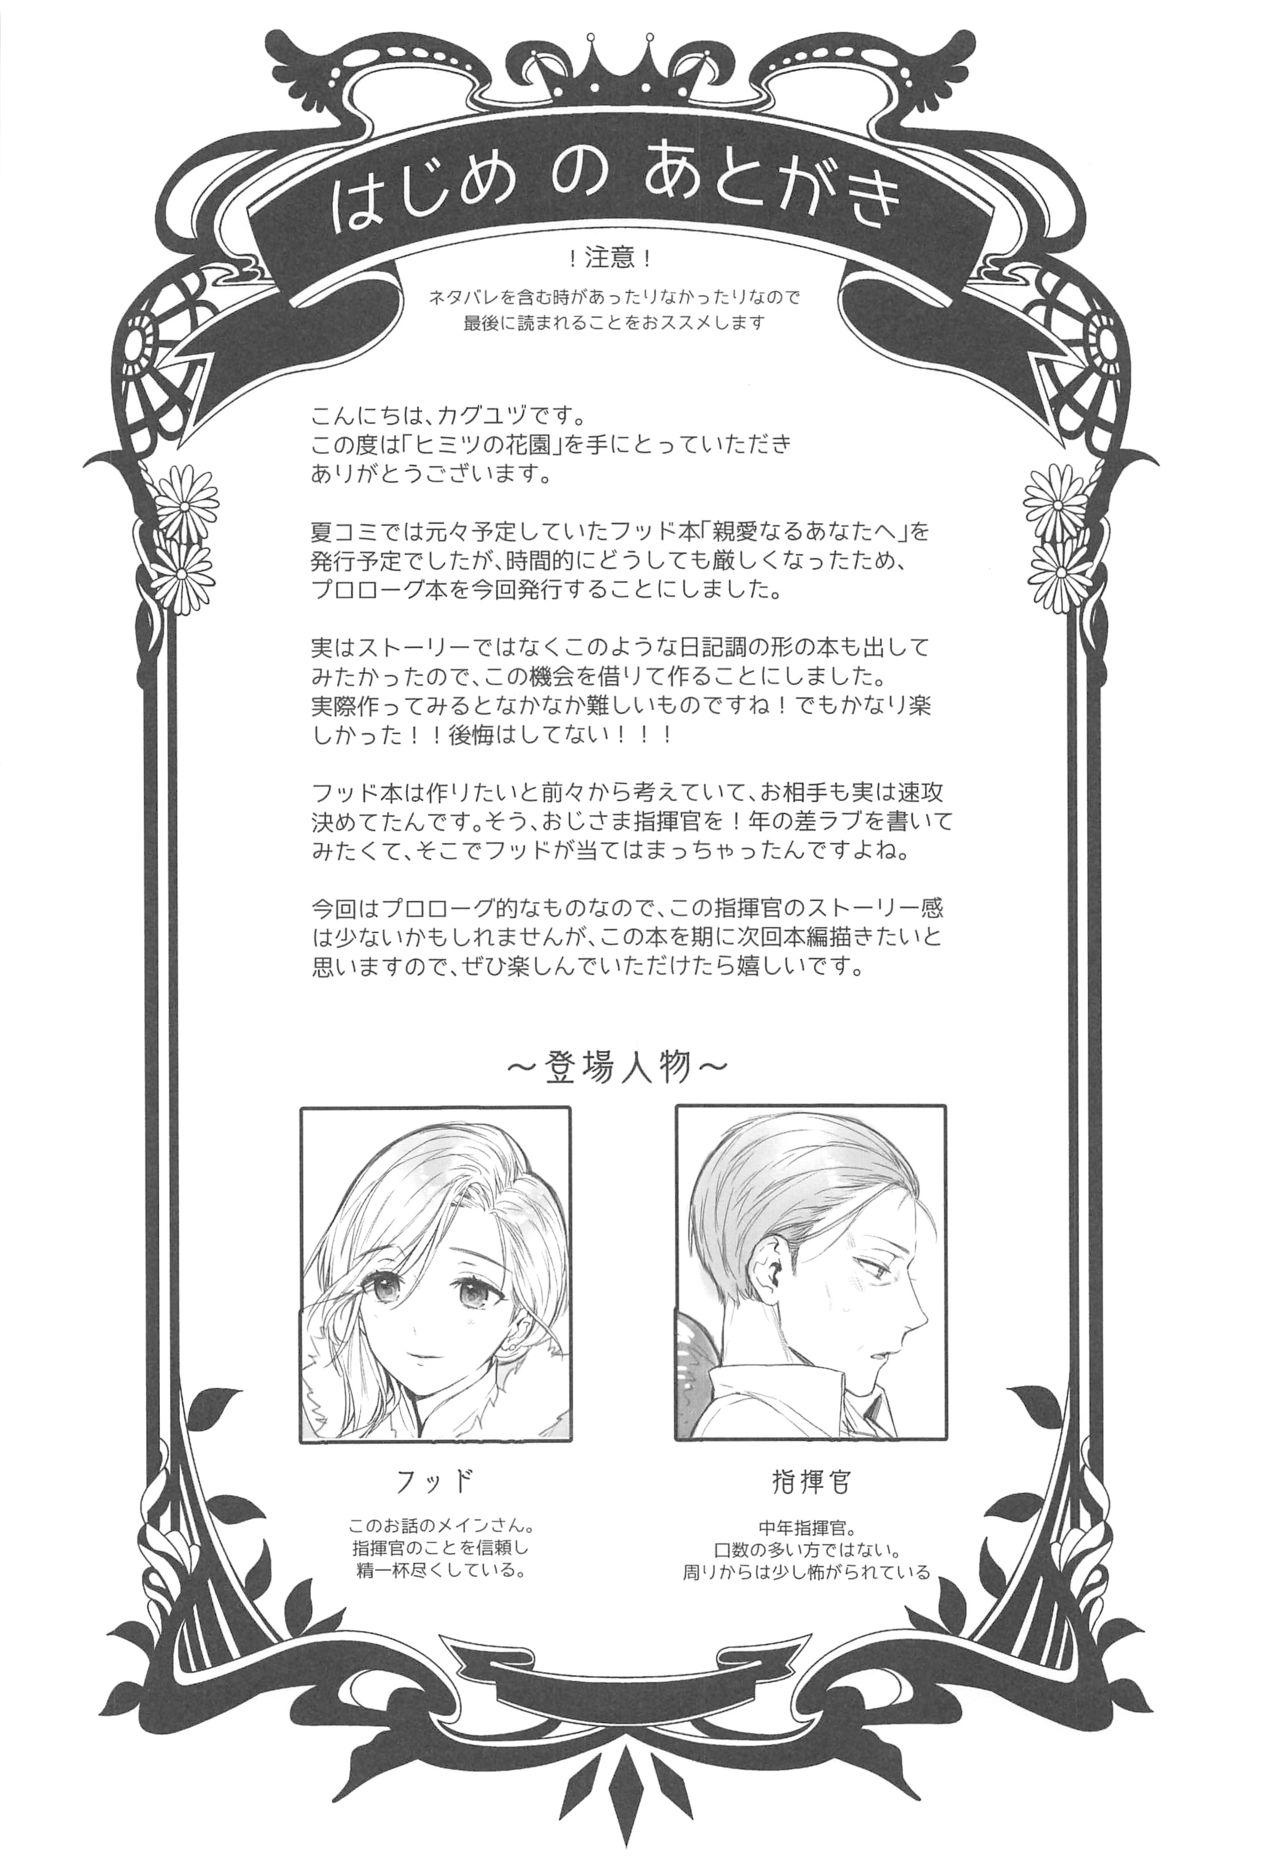 Rub Himitsu no Hanazono - Azur lane Gay Straight - Page 3